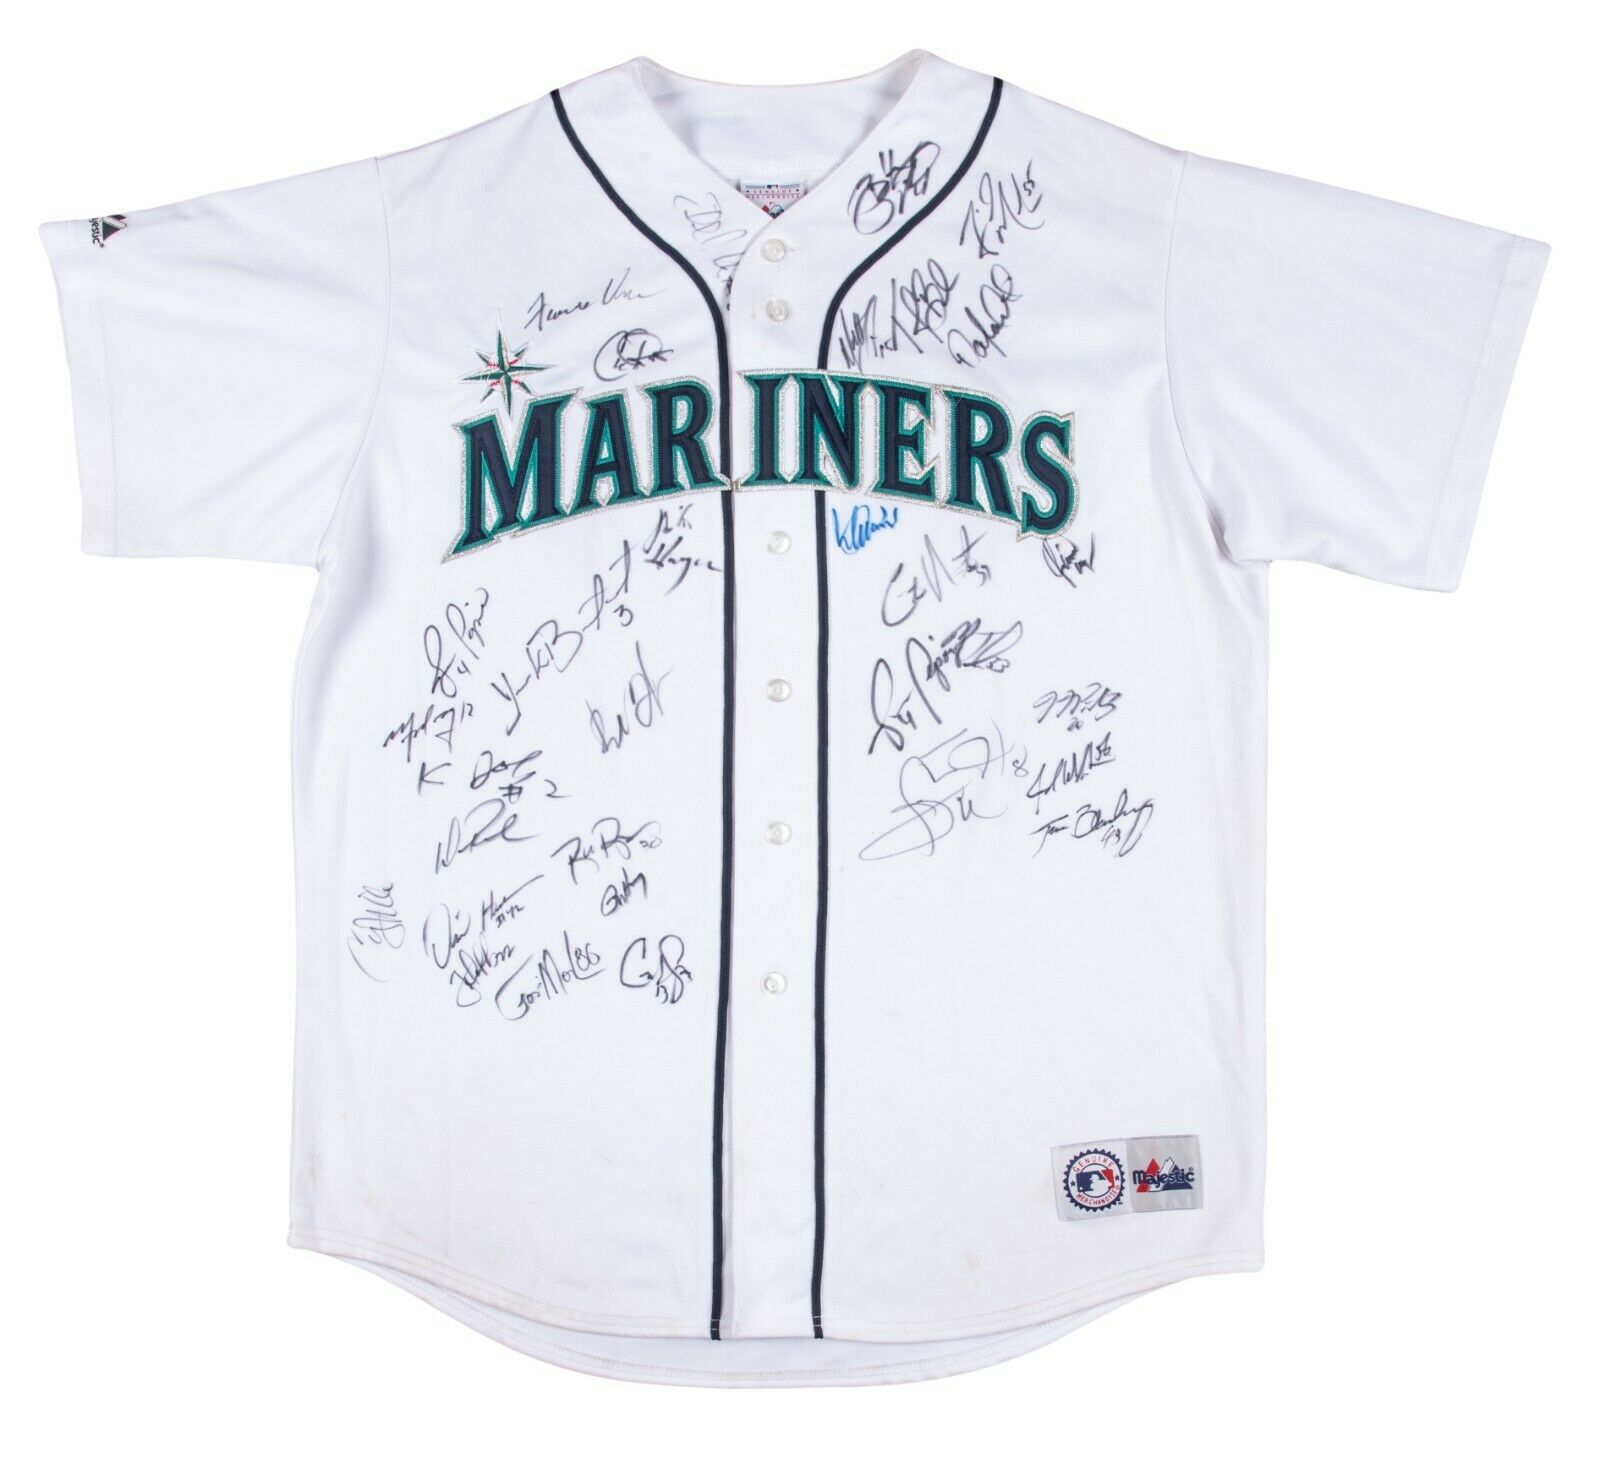 Official ichiro Suzuki Seattle Mariners Baseball Retro shirt